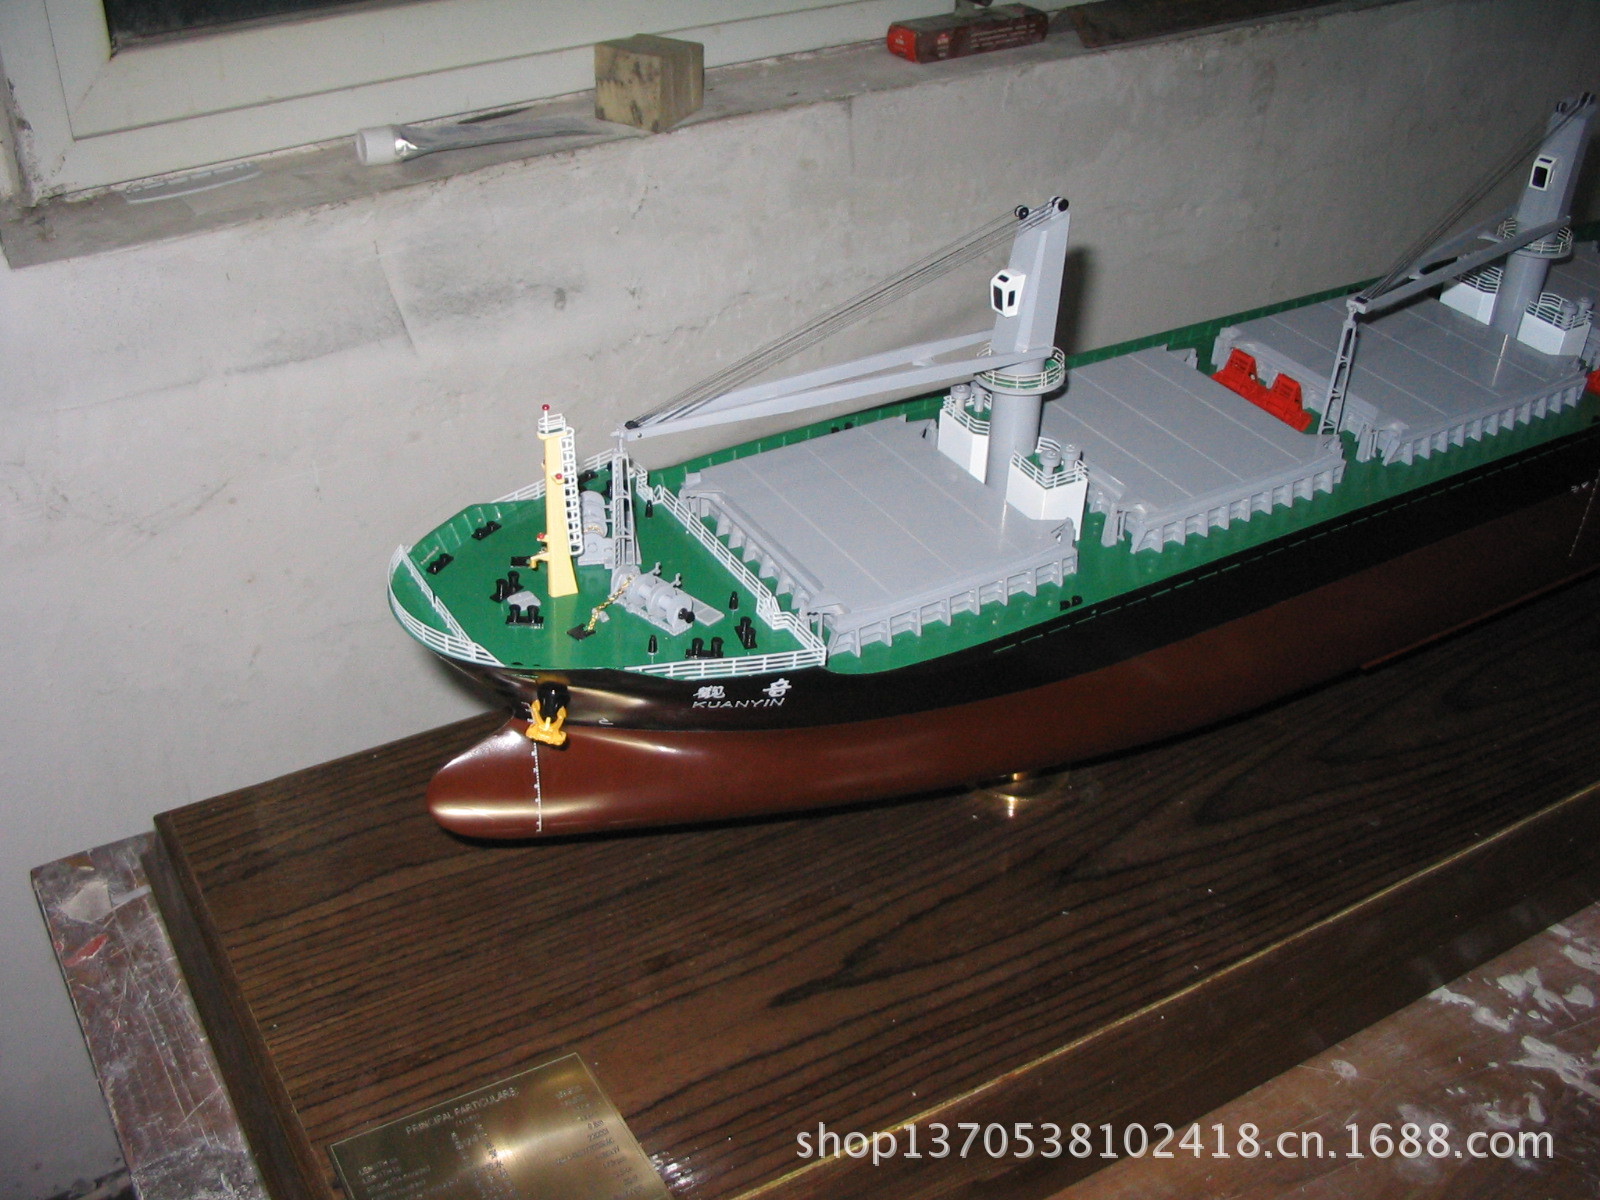 散货船模型 船模型加工,船模型来图订制,船模型生产批发 教学